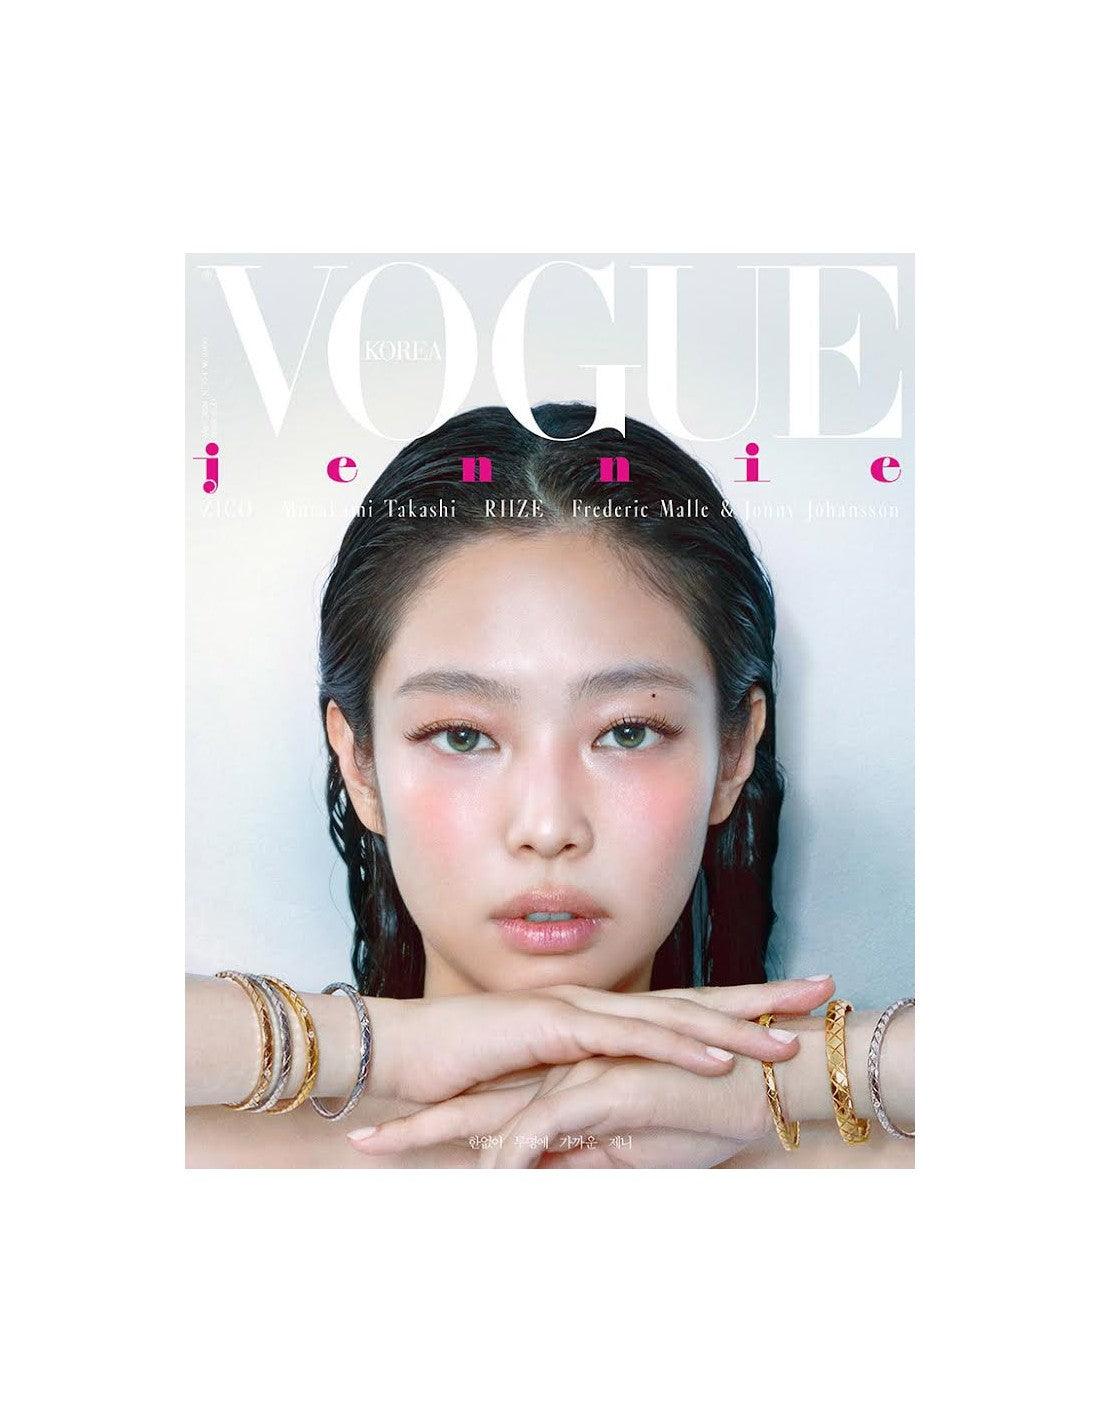 VOGUE KOREA MAGAZINE / COVER : JENNIE - KAEPJJANG SHOP (캡짱 숍)